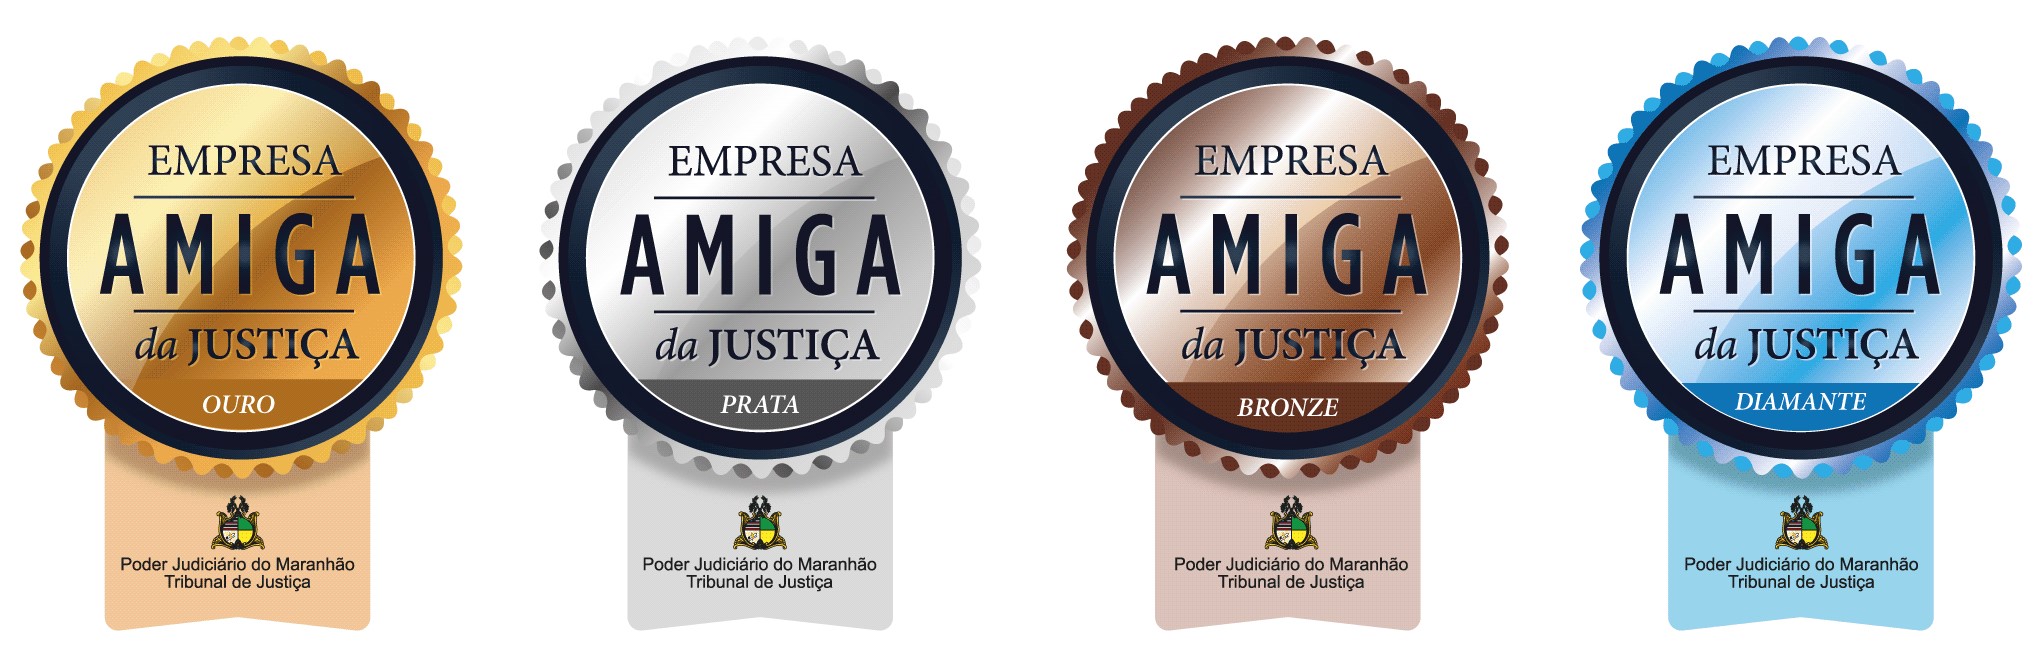 Selo de Reconhecimento "Empresa Amiga da Justiça"